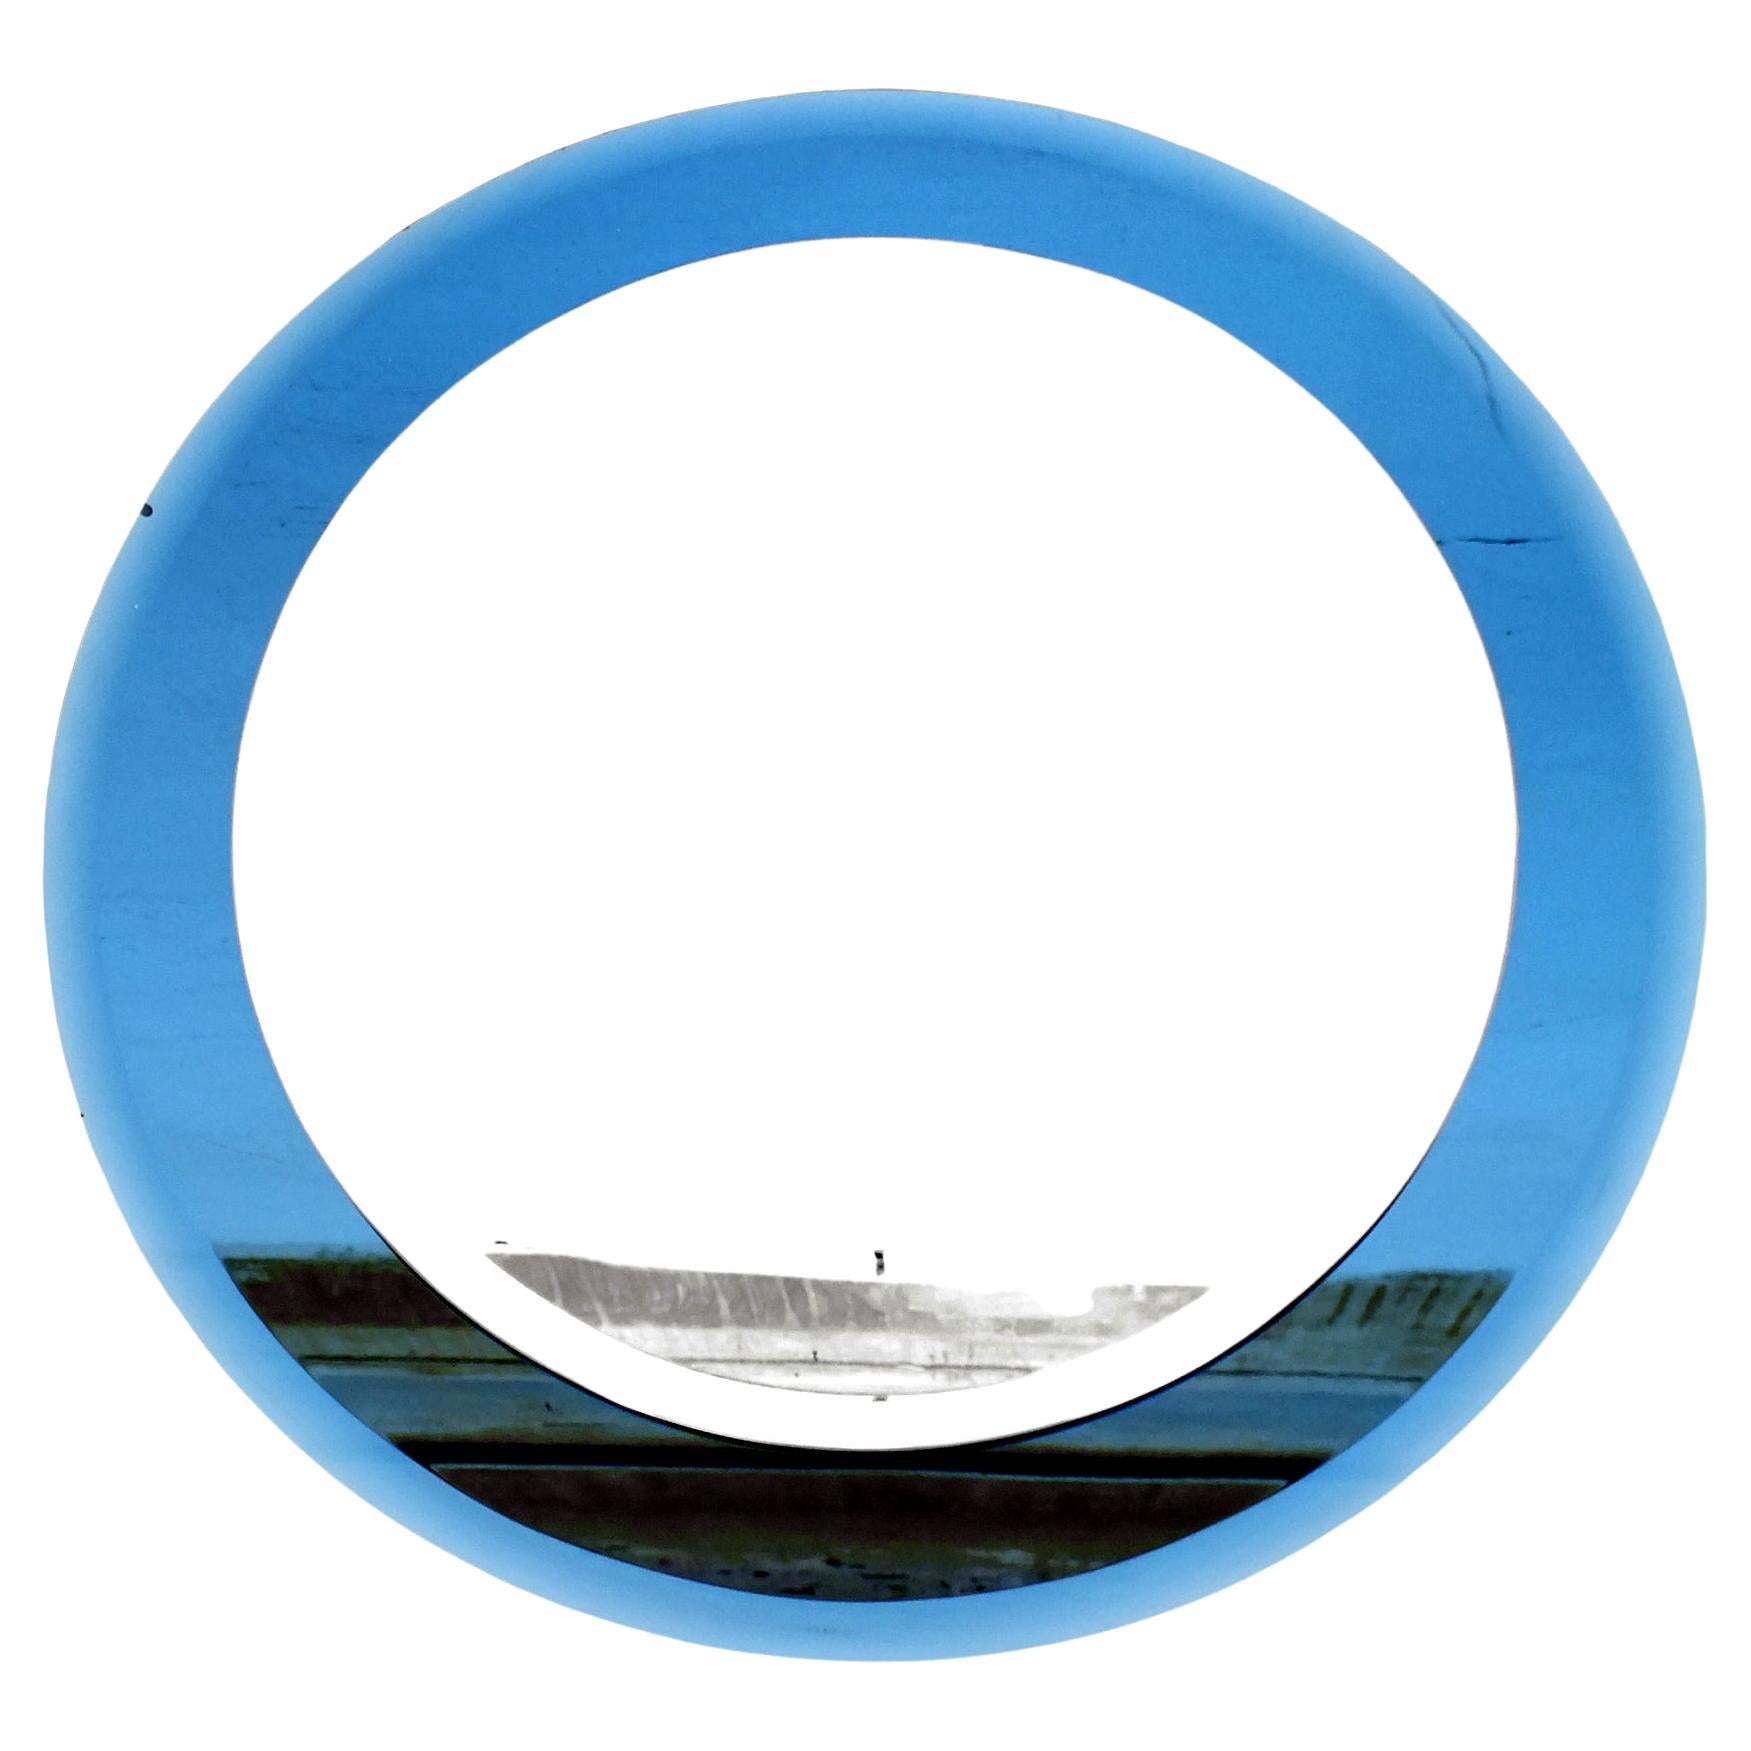 Luigi Fontana design bleu cobalt miroir déco' années '40 design Pietro Chiesa attribué

                    miroir double exclusif dans un cadre en verre bleu

                    mesurer le diamètre extérieur du verre 28 pouces  et diamètre du